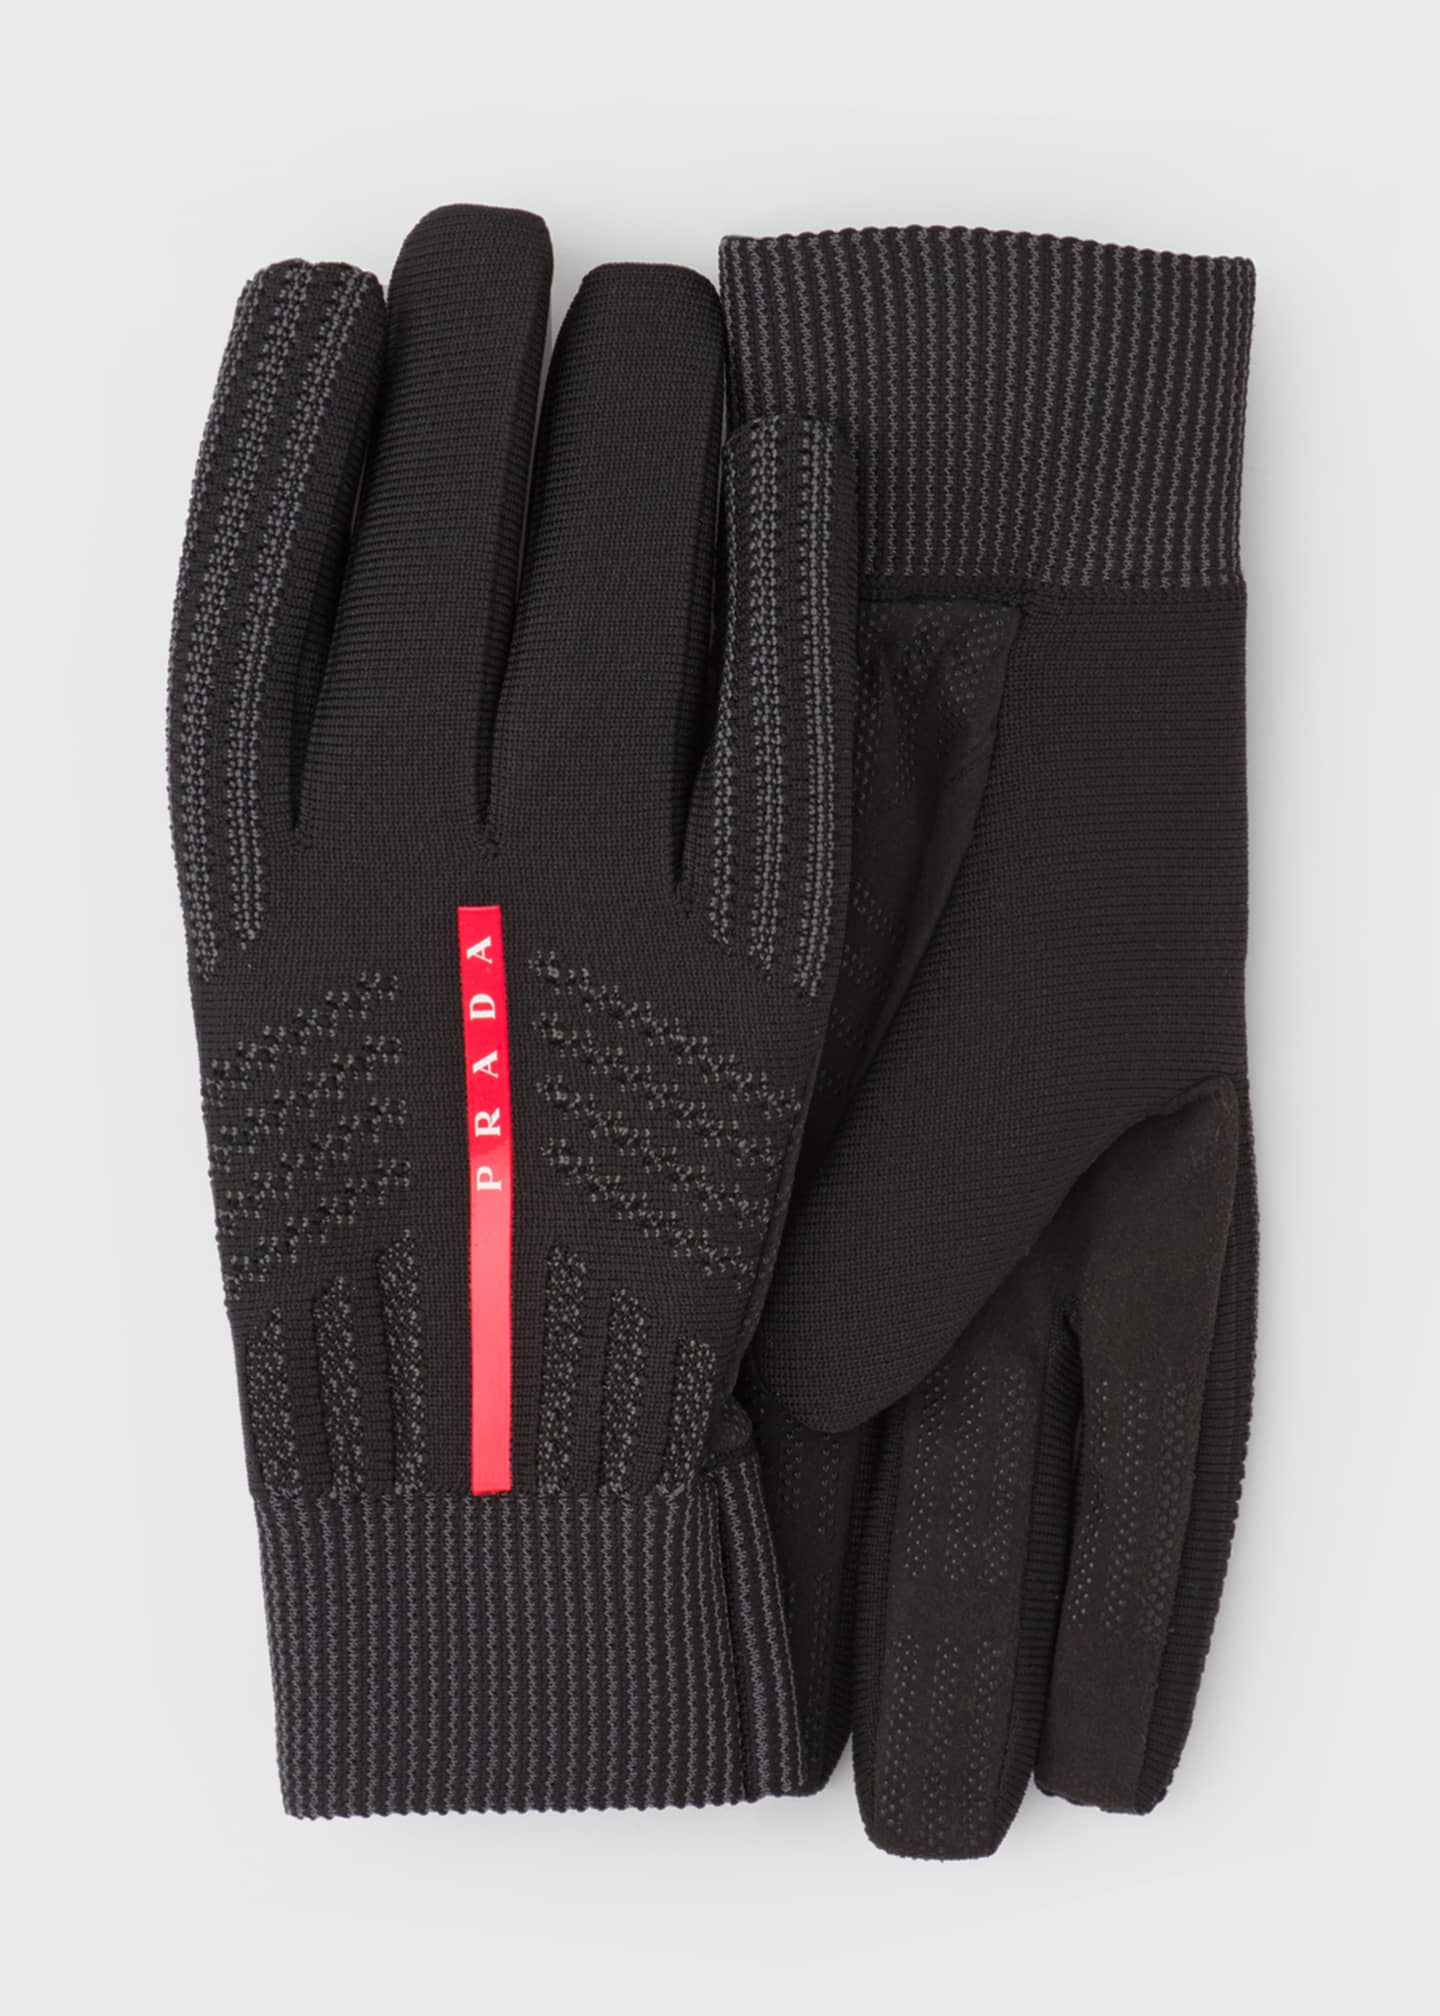 prioriteit Bungalow Geruïneerd Prada Men's Sport Knit Linea Rossa Gloves - Bergdorf Goodman